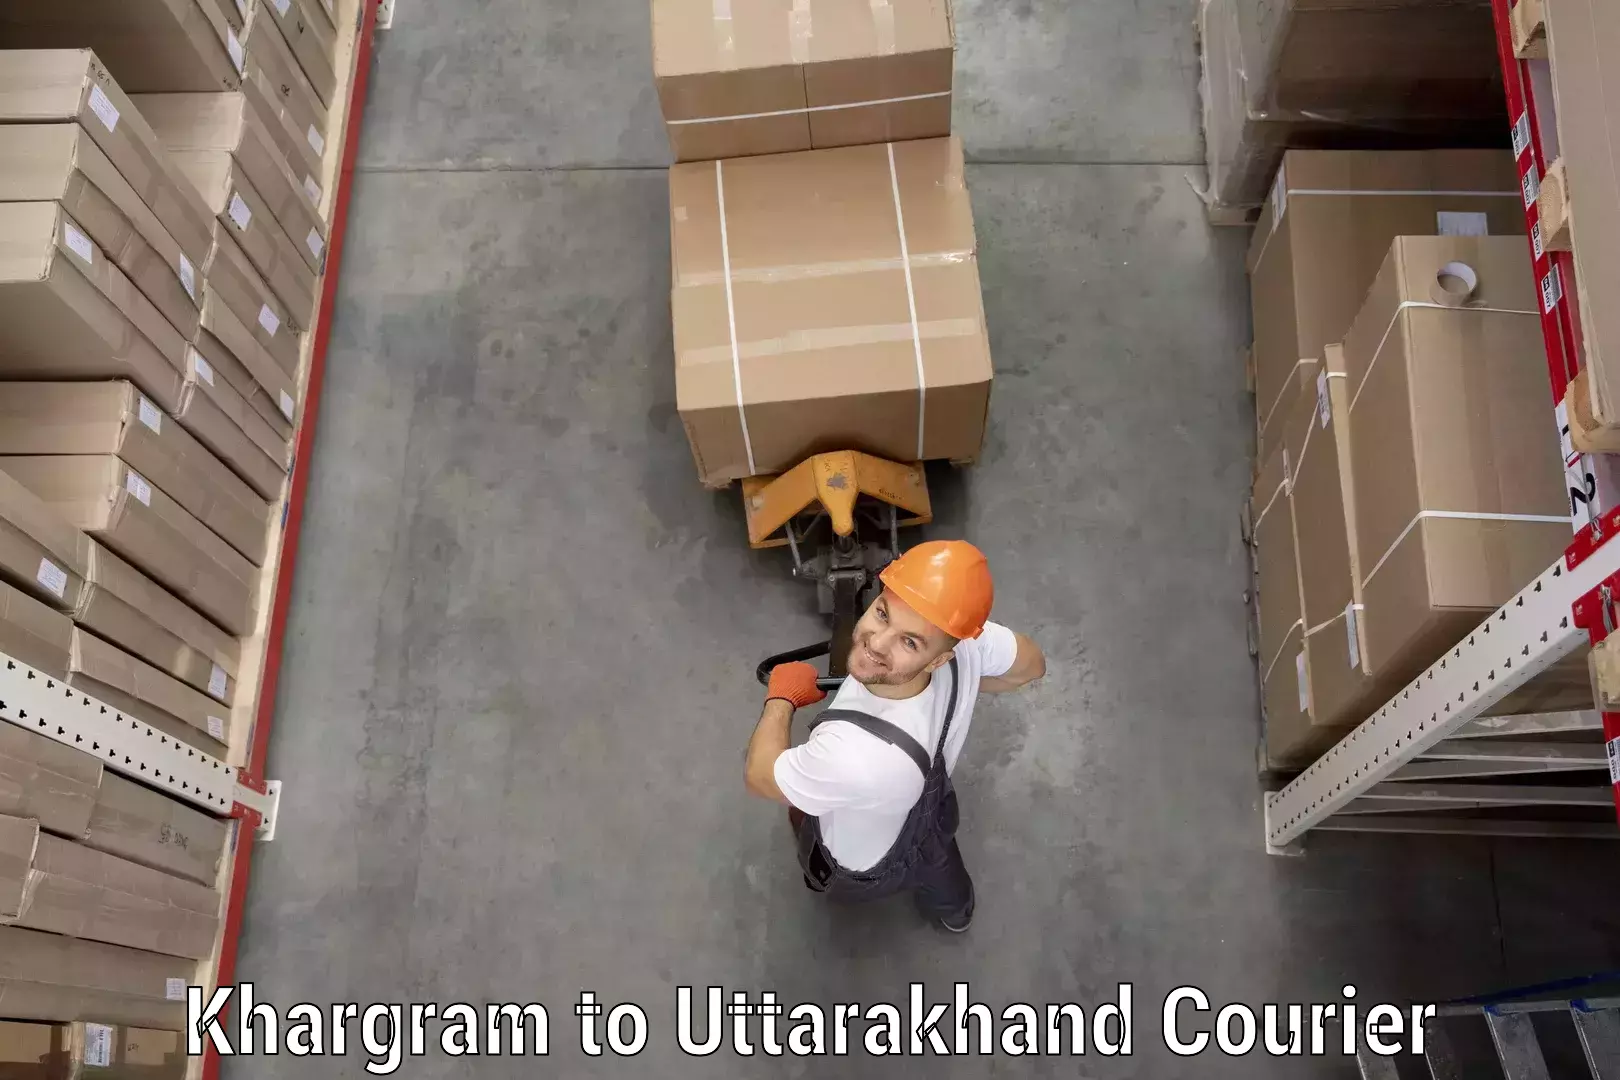 Multi-national courier services Khargram to Uttarkashi